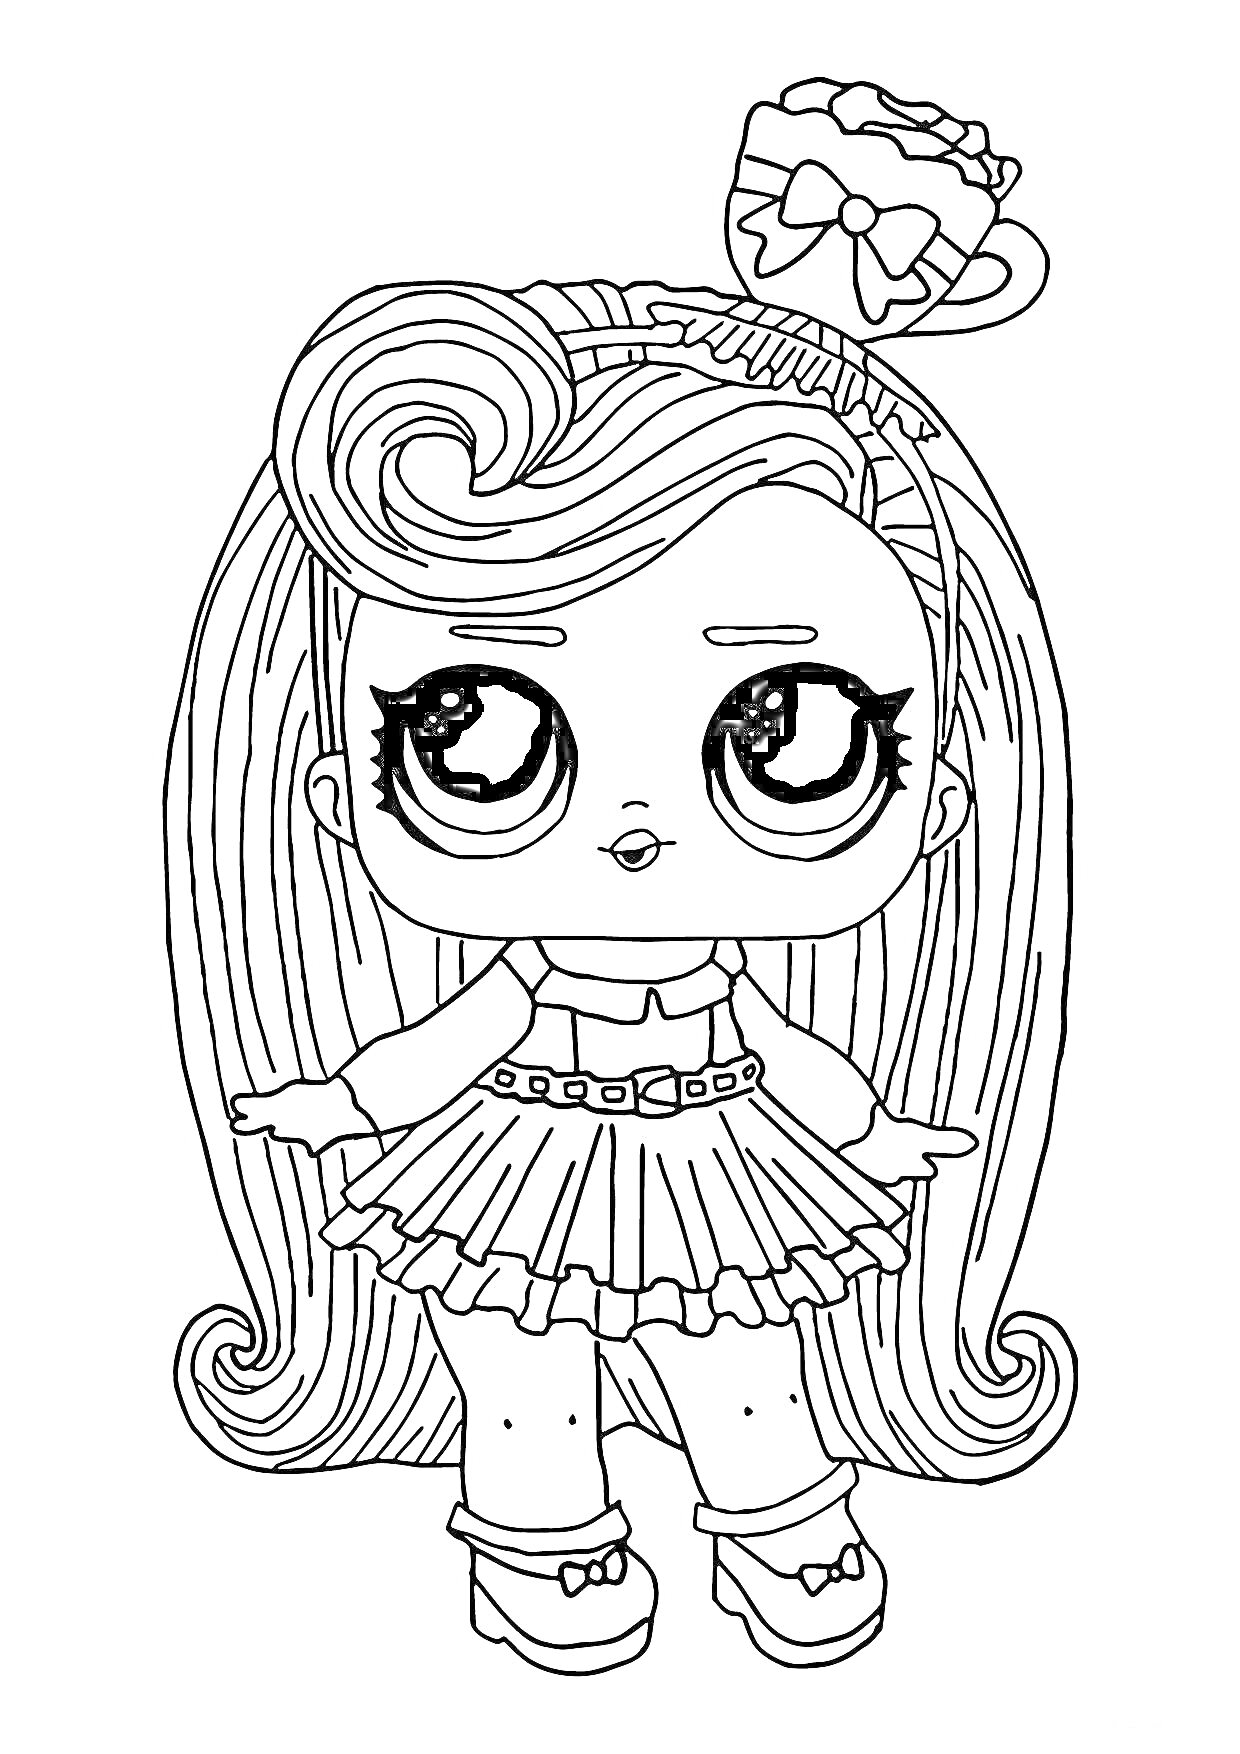 Раскраска Кукла ЛОЛ с длинными волосами, в юбочке и на высоких босоножках, с бантом на голове.